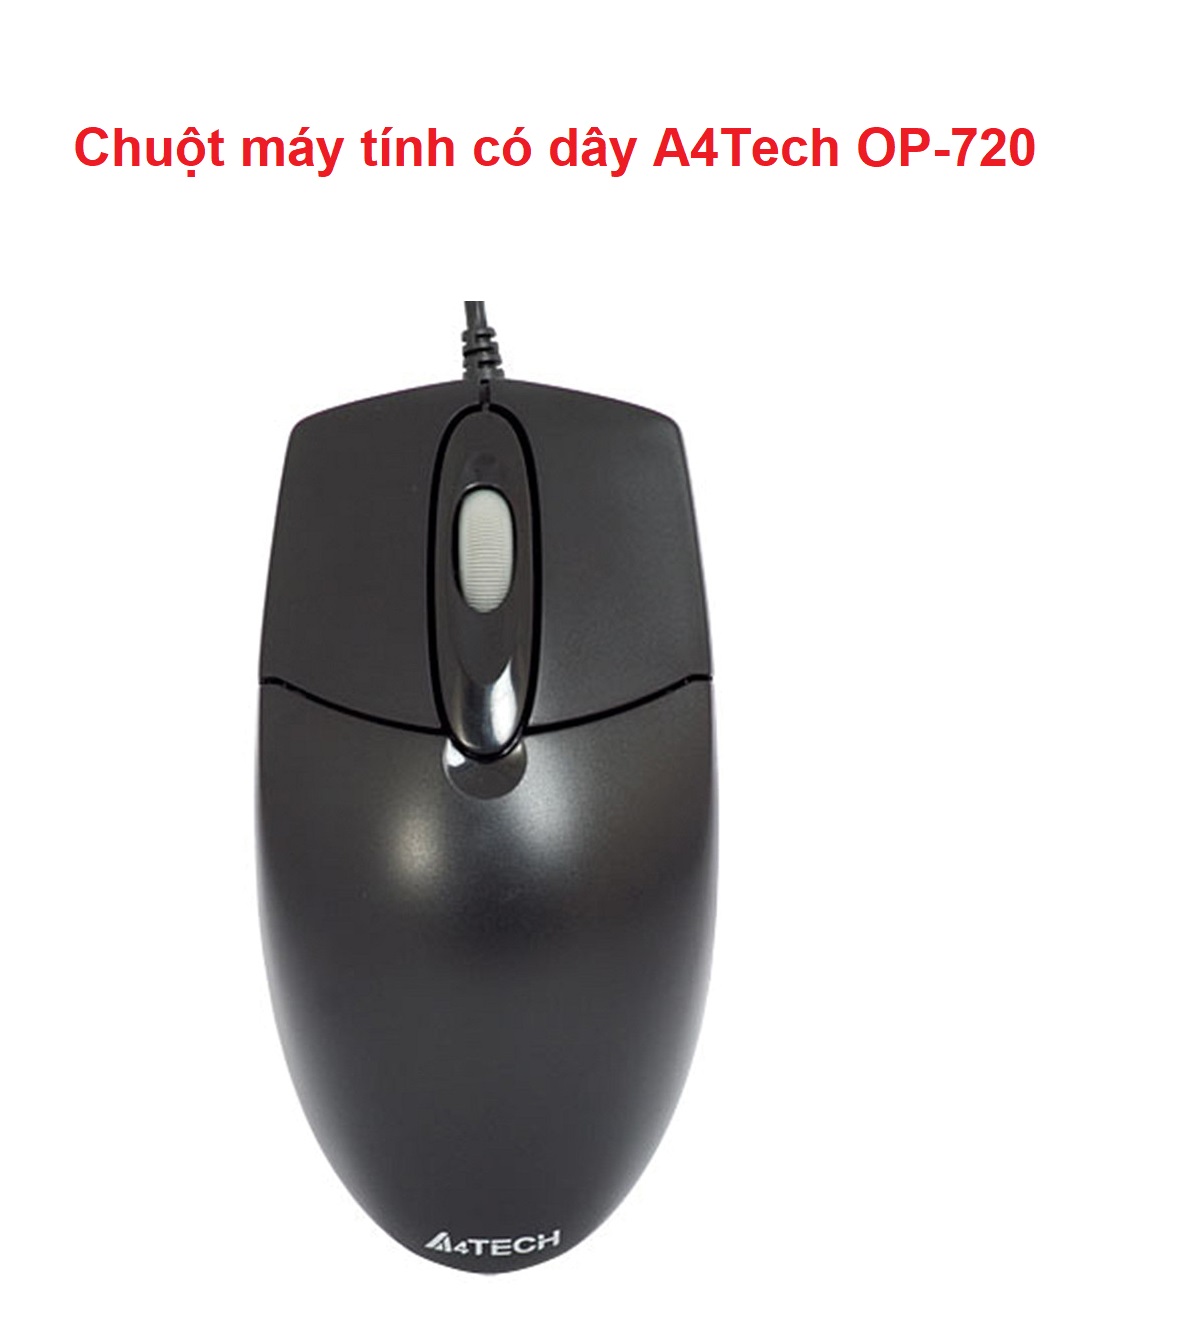 Chuột máy tính có dây A4Tech OP-720